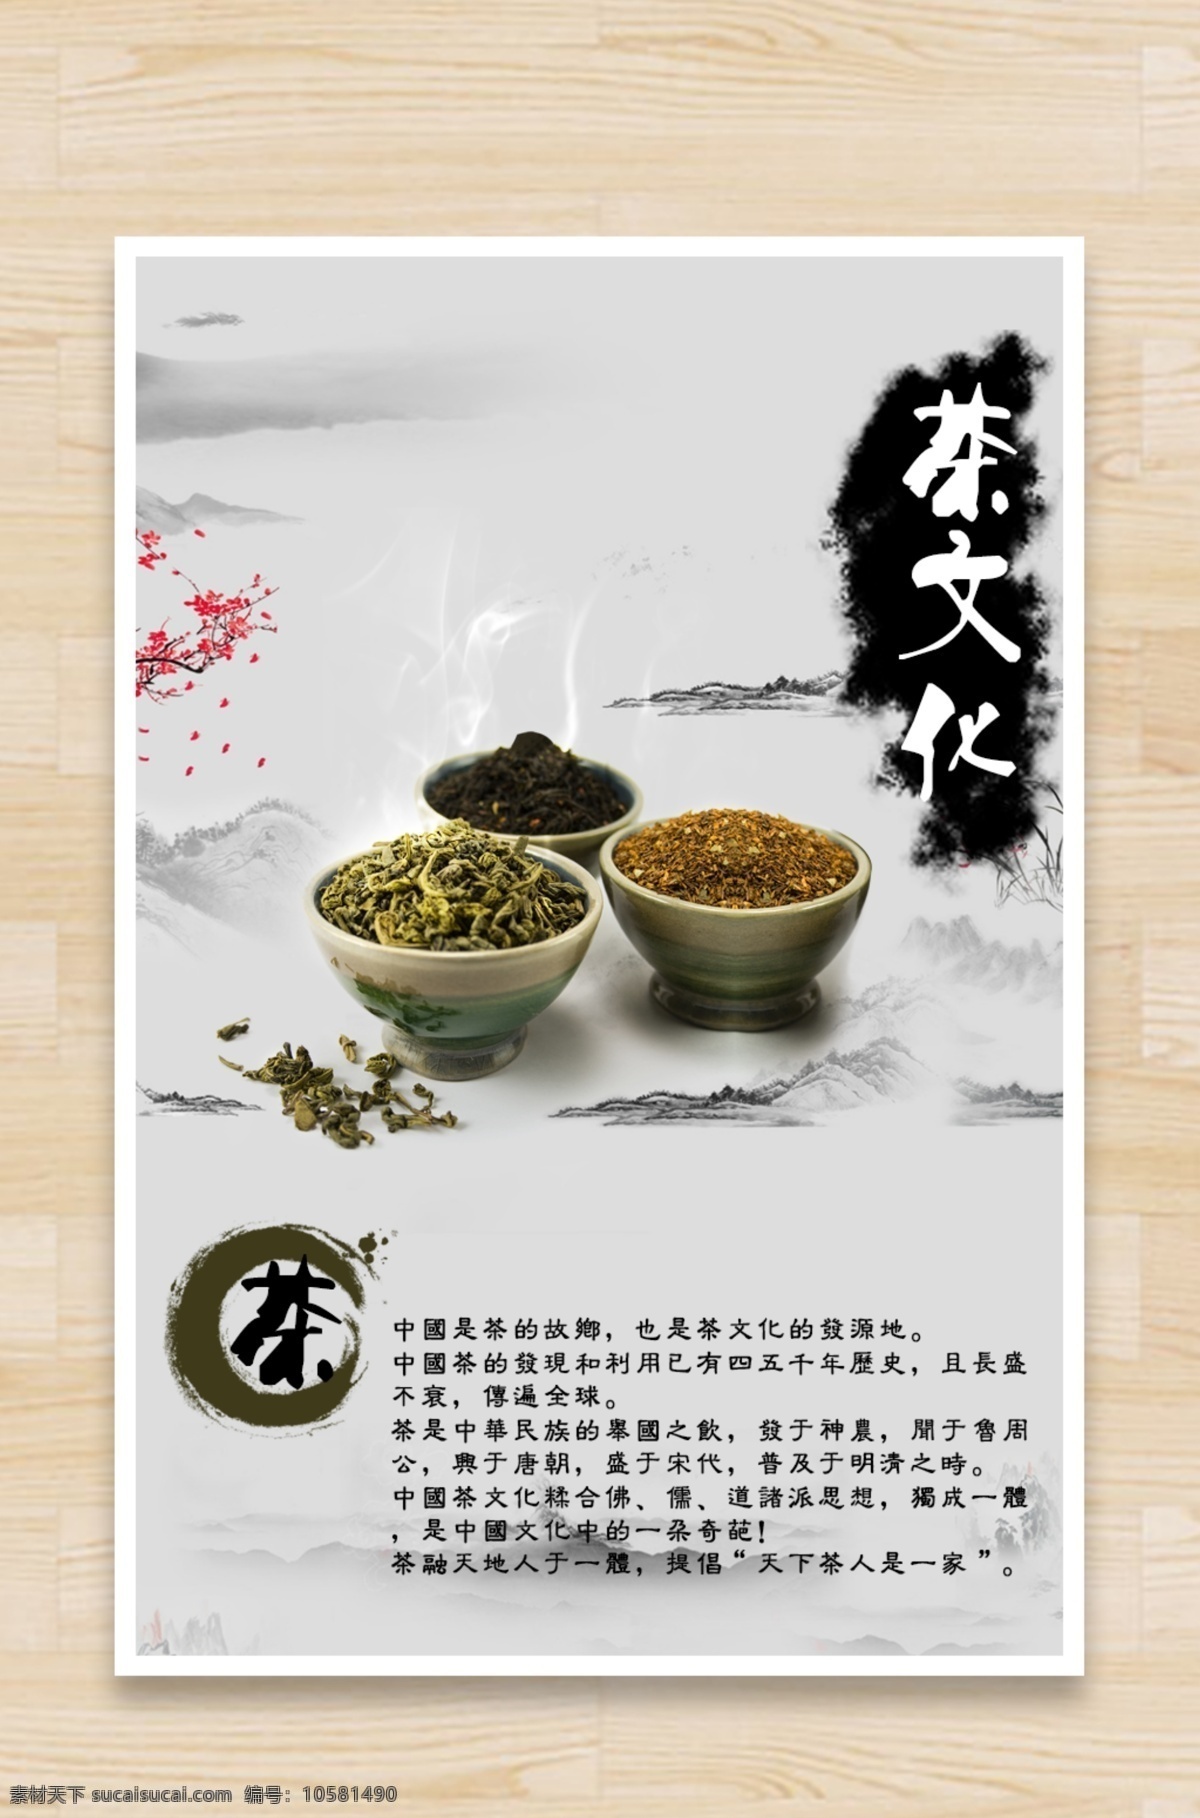 中国风茶海报 中国 风 海报 背景 图 白色 传统图案 水墨画 中国风海报 茶文化 茶之韵 中国茶海报